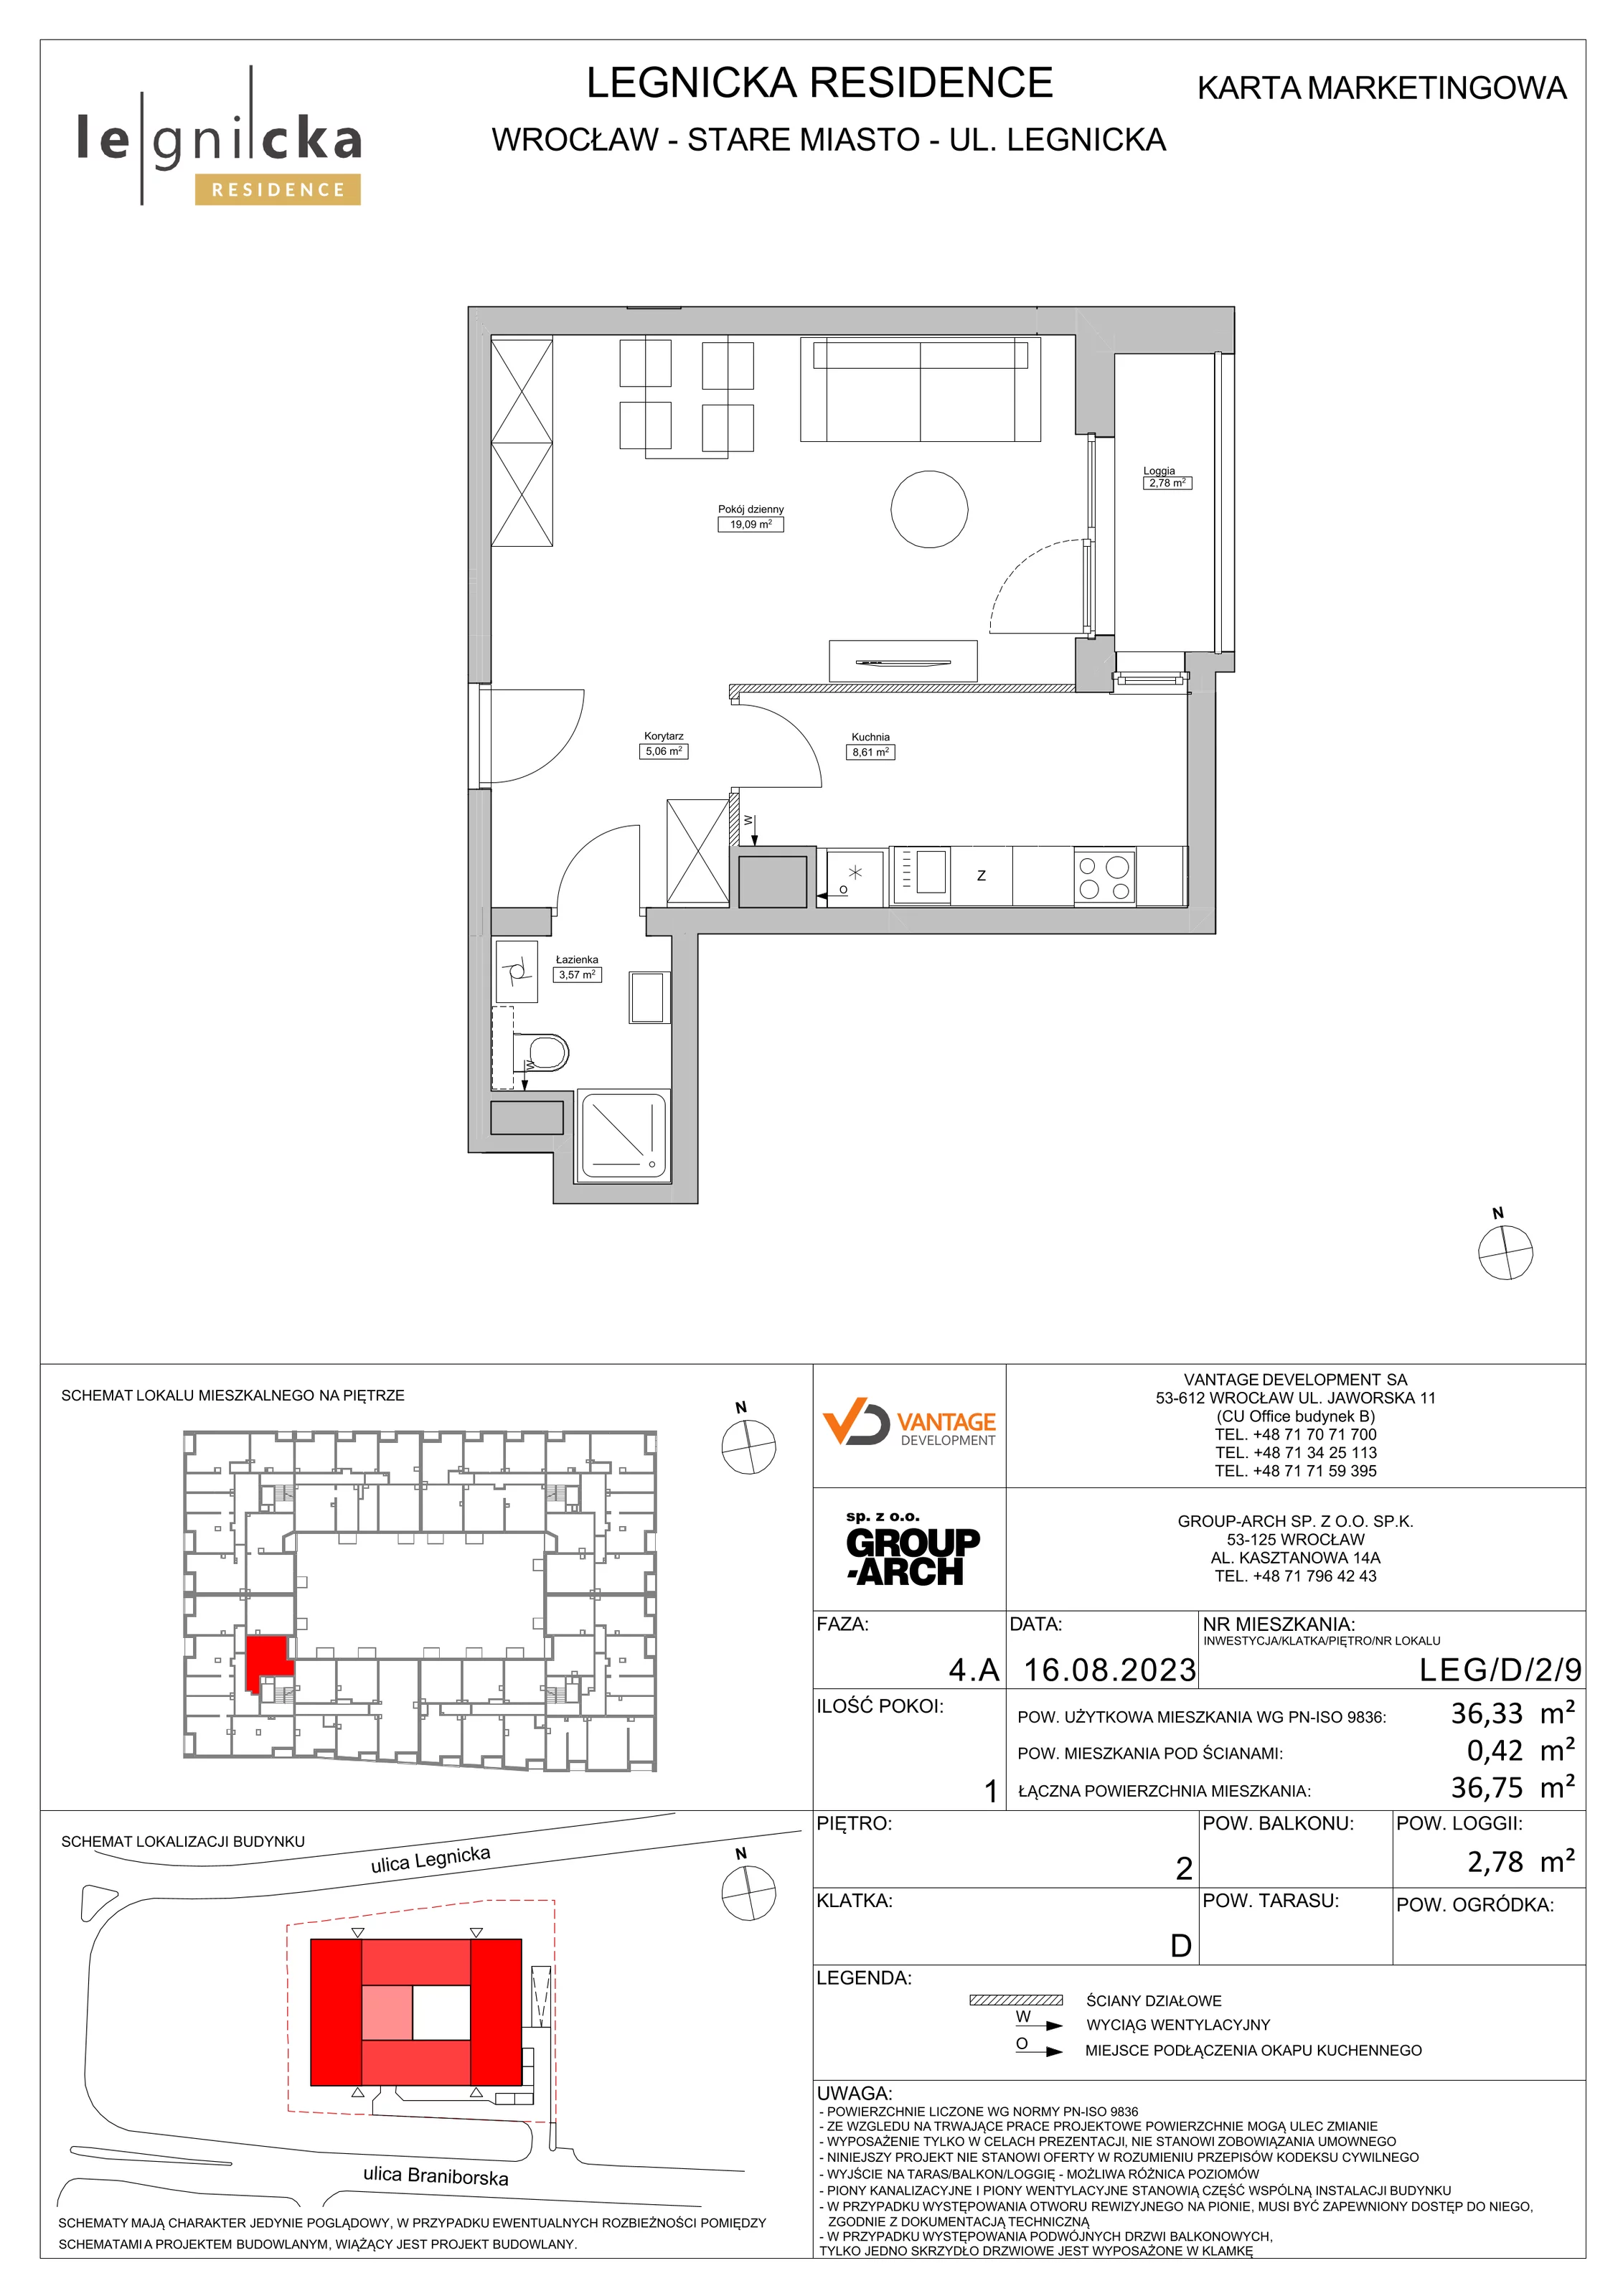 Apartament inwestycyjny 36,33 m², piętro 2, oferta nr LEG/D/2/9, Legnicka Residence, Wrocław, Szczepin, ul. Legnicka 36